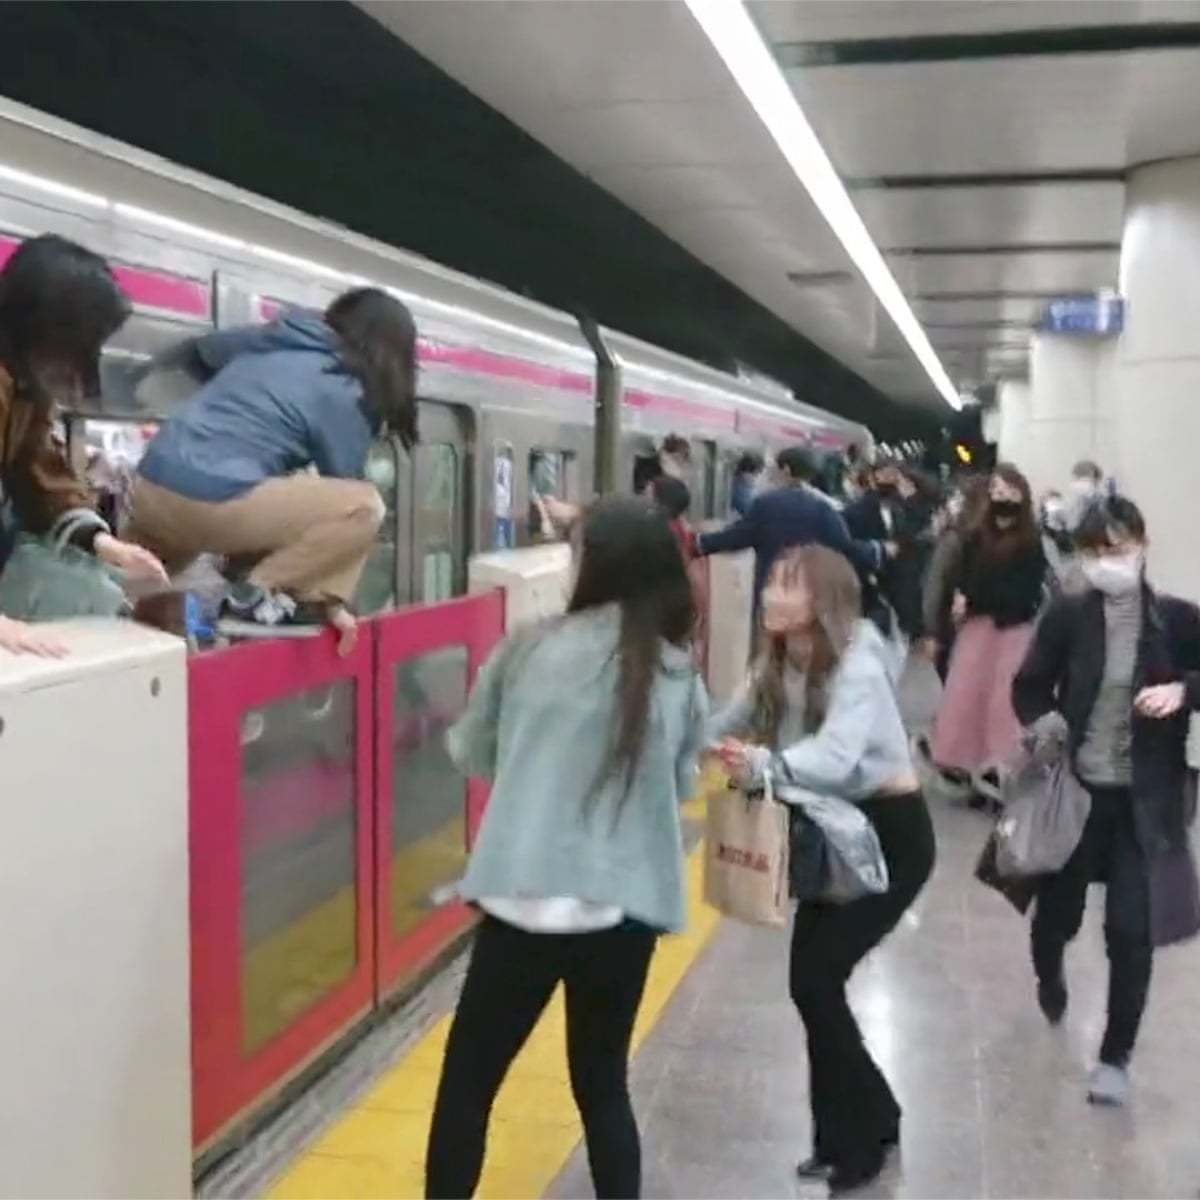 万圣夜东京地铁内 男申博官方app子扮作“小丑”持刀伤17人